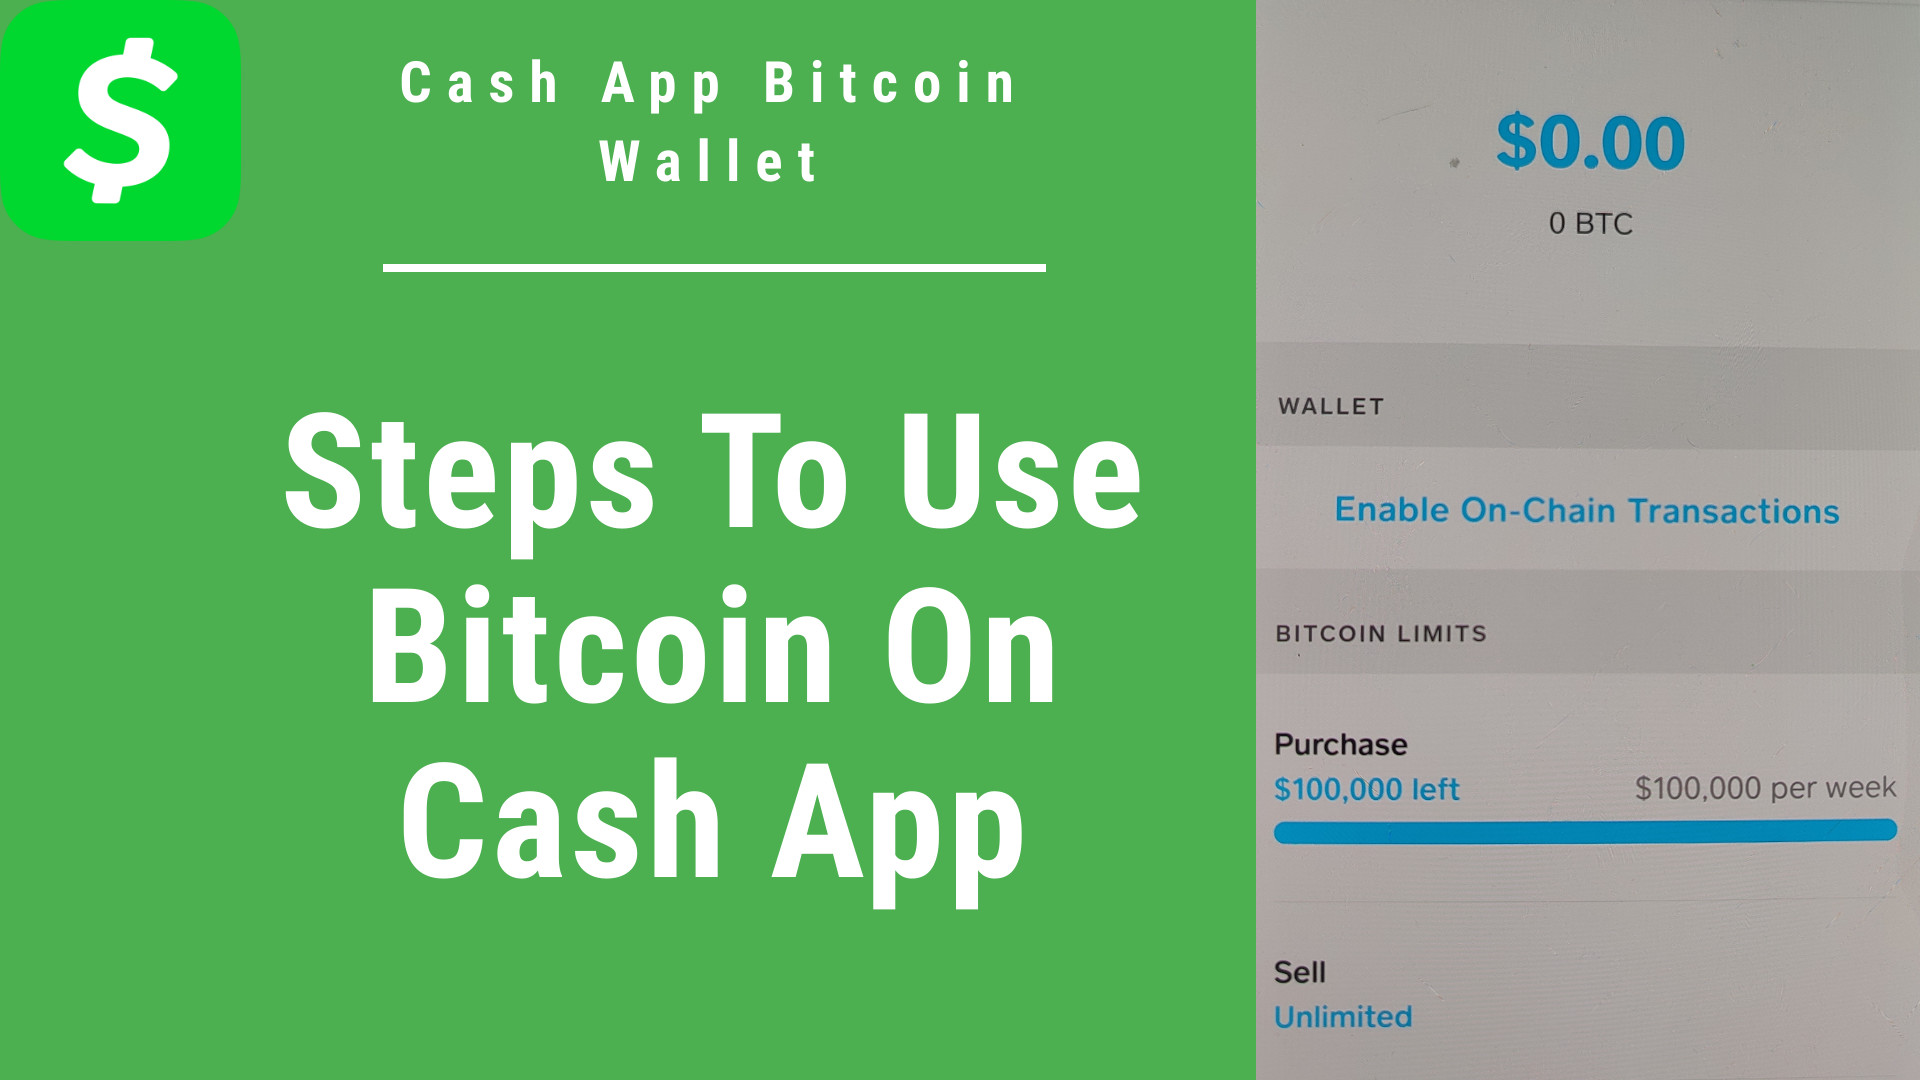 Cash App Bitcoin
ERE N-R

SDE [REE
SIR
Cash App